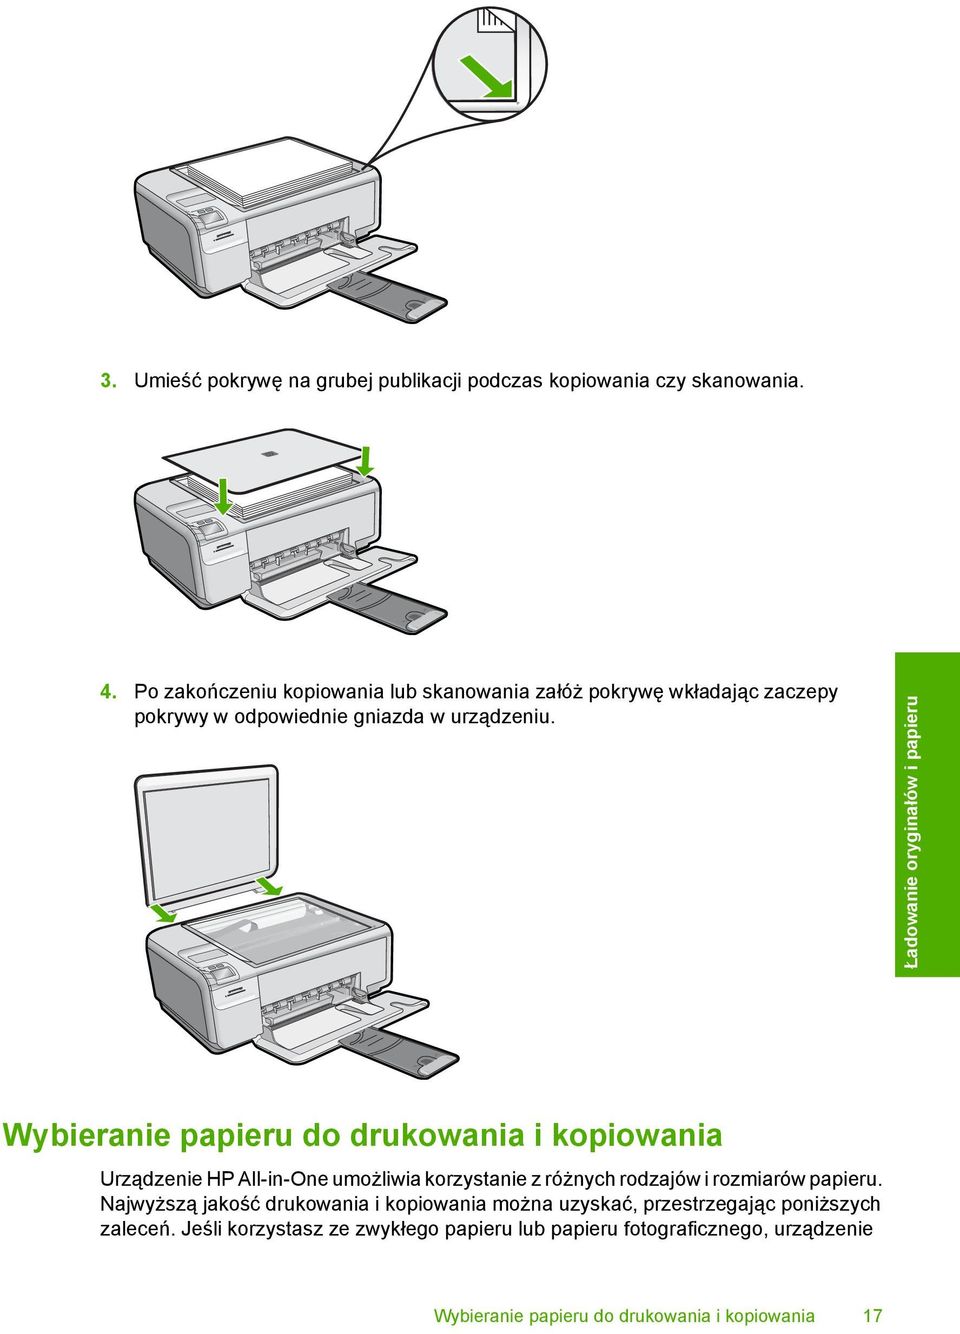 Ładowanie oryginałów i papieru Wybieranie papieru do drukowania i kopiowania Urządzenie HP All-in-One umożliwia korzystanie z różnych rodzajów